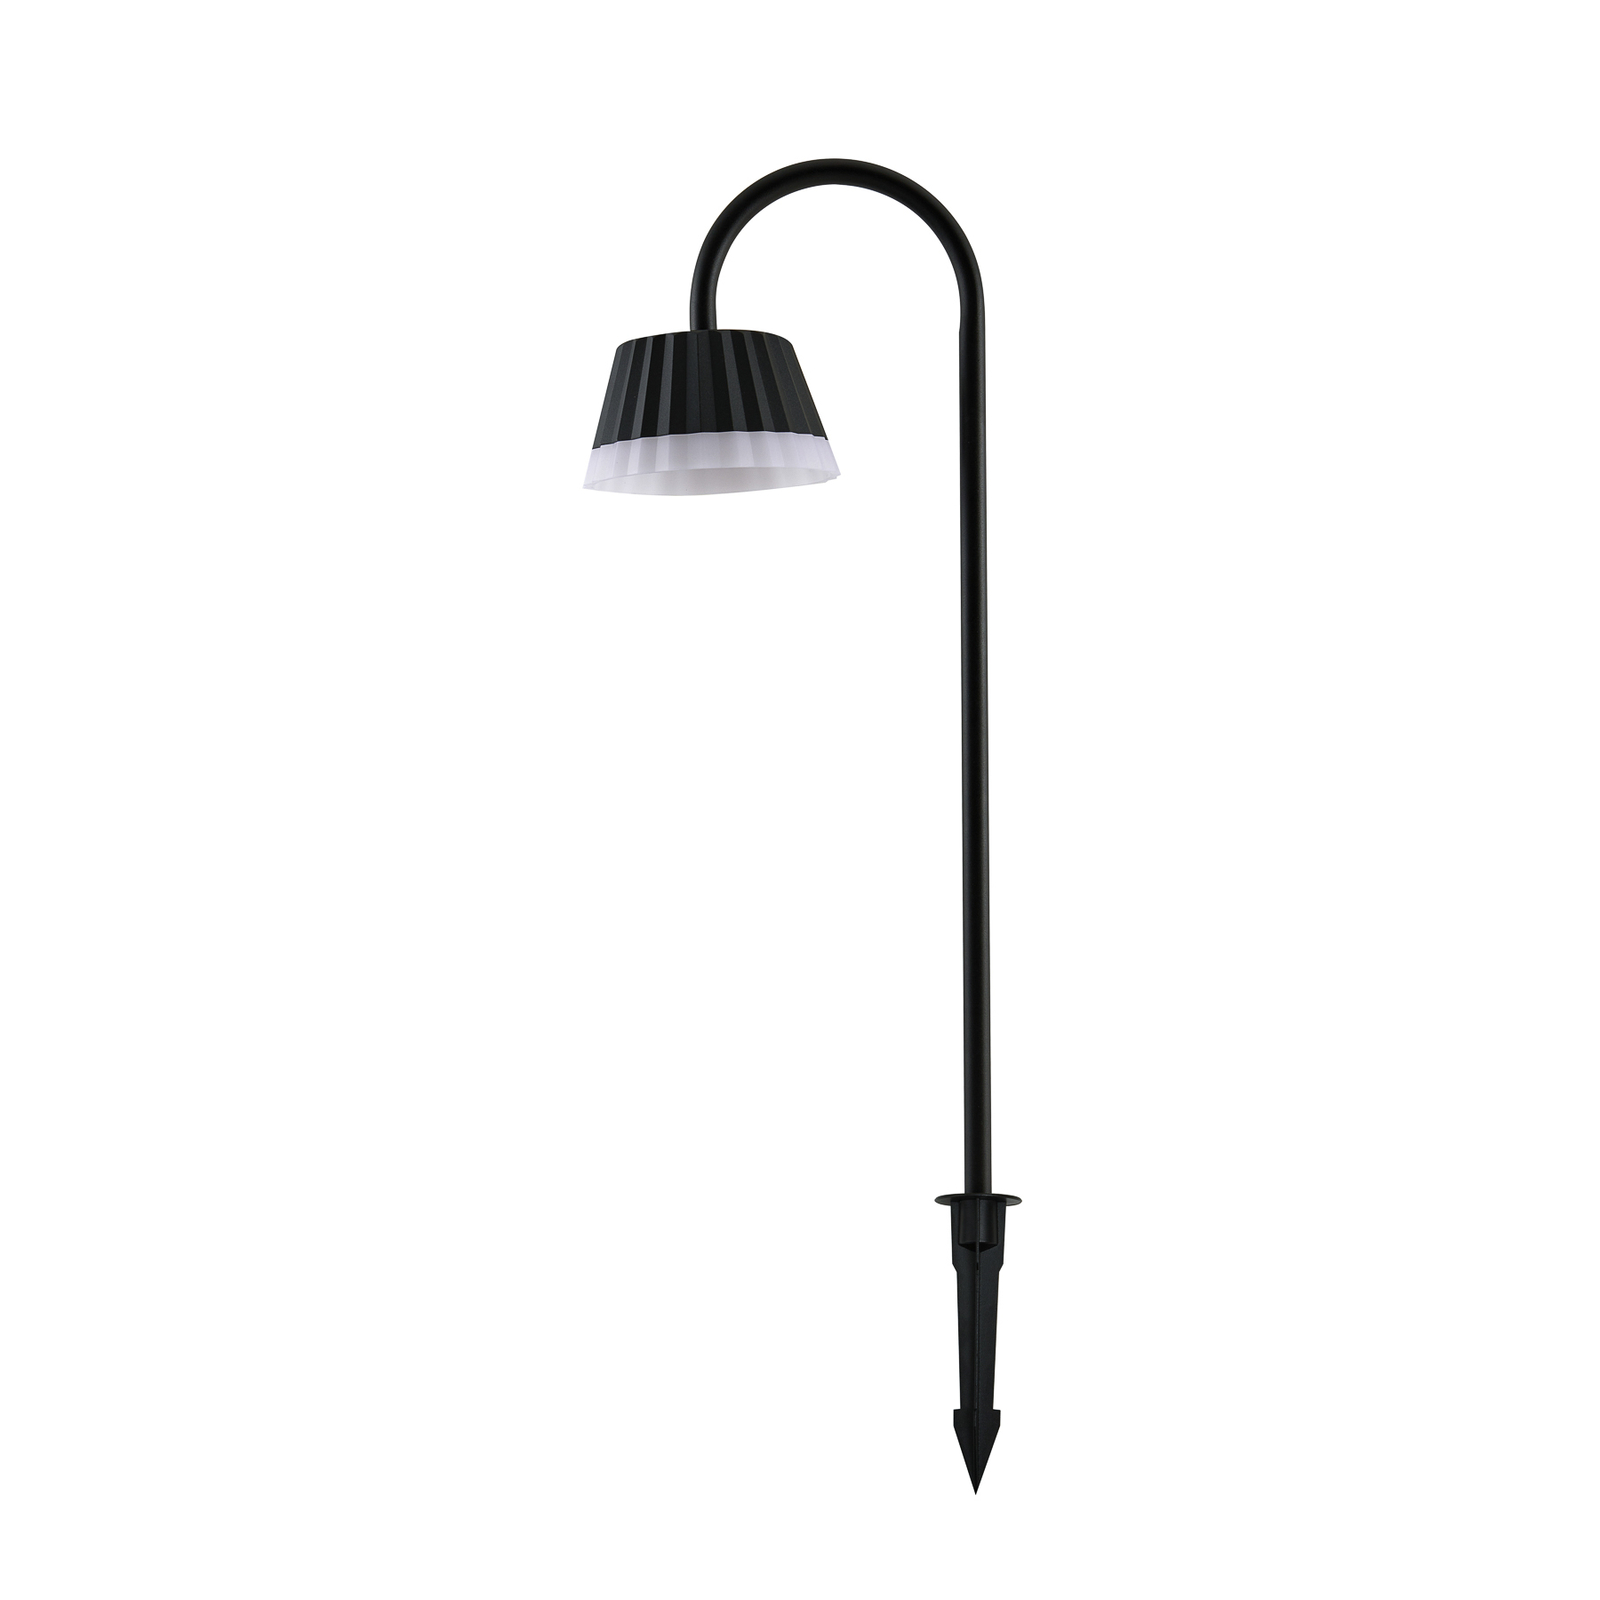 Lindby LED jordspydlampe Ameline, mørk grå, IP65, 77 cm